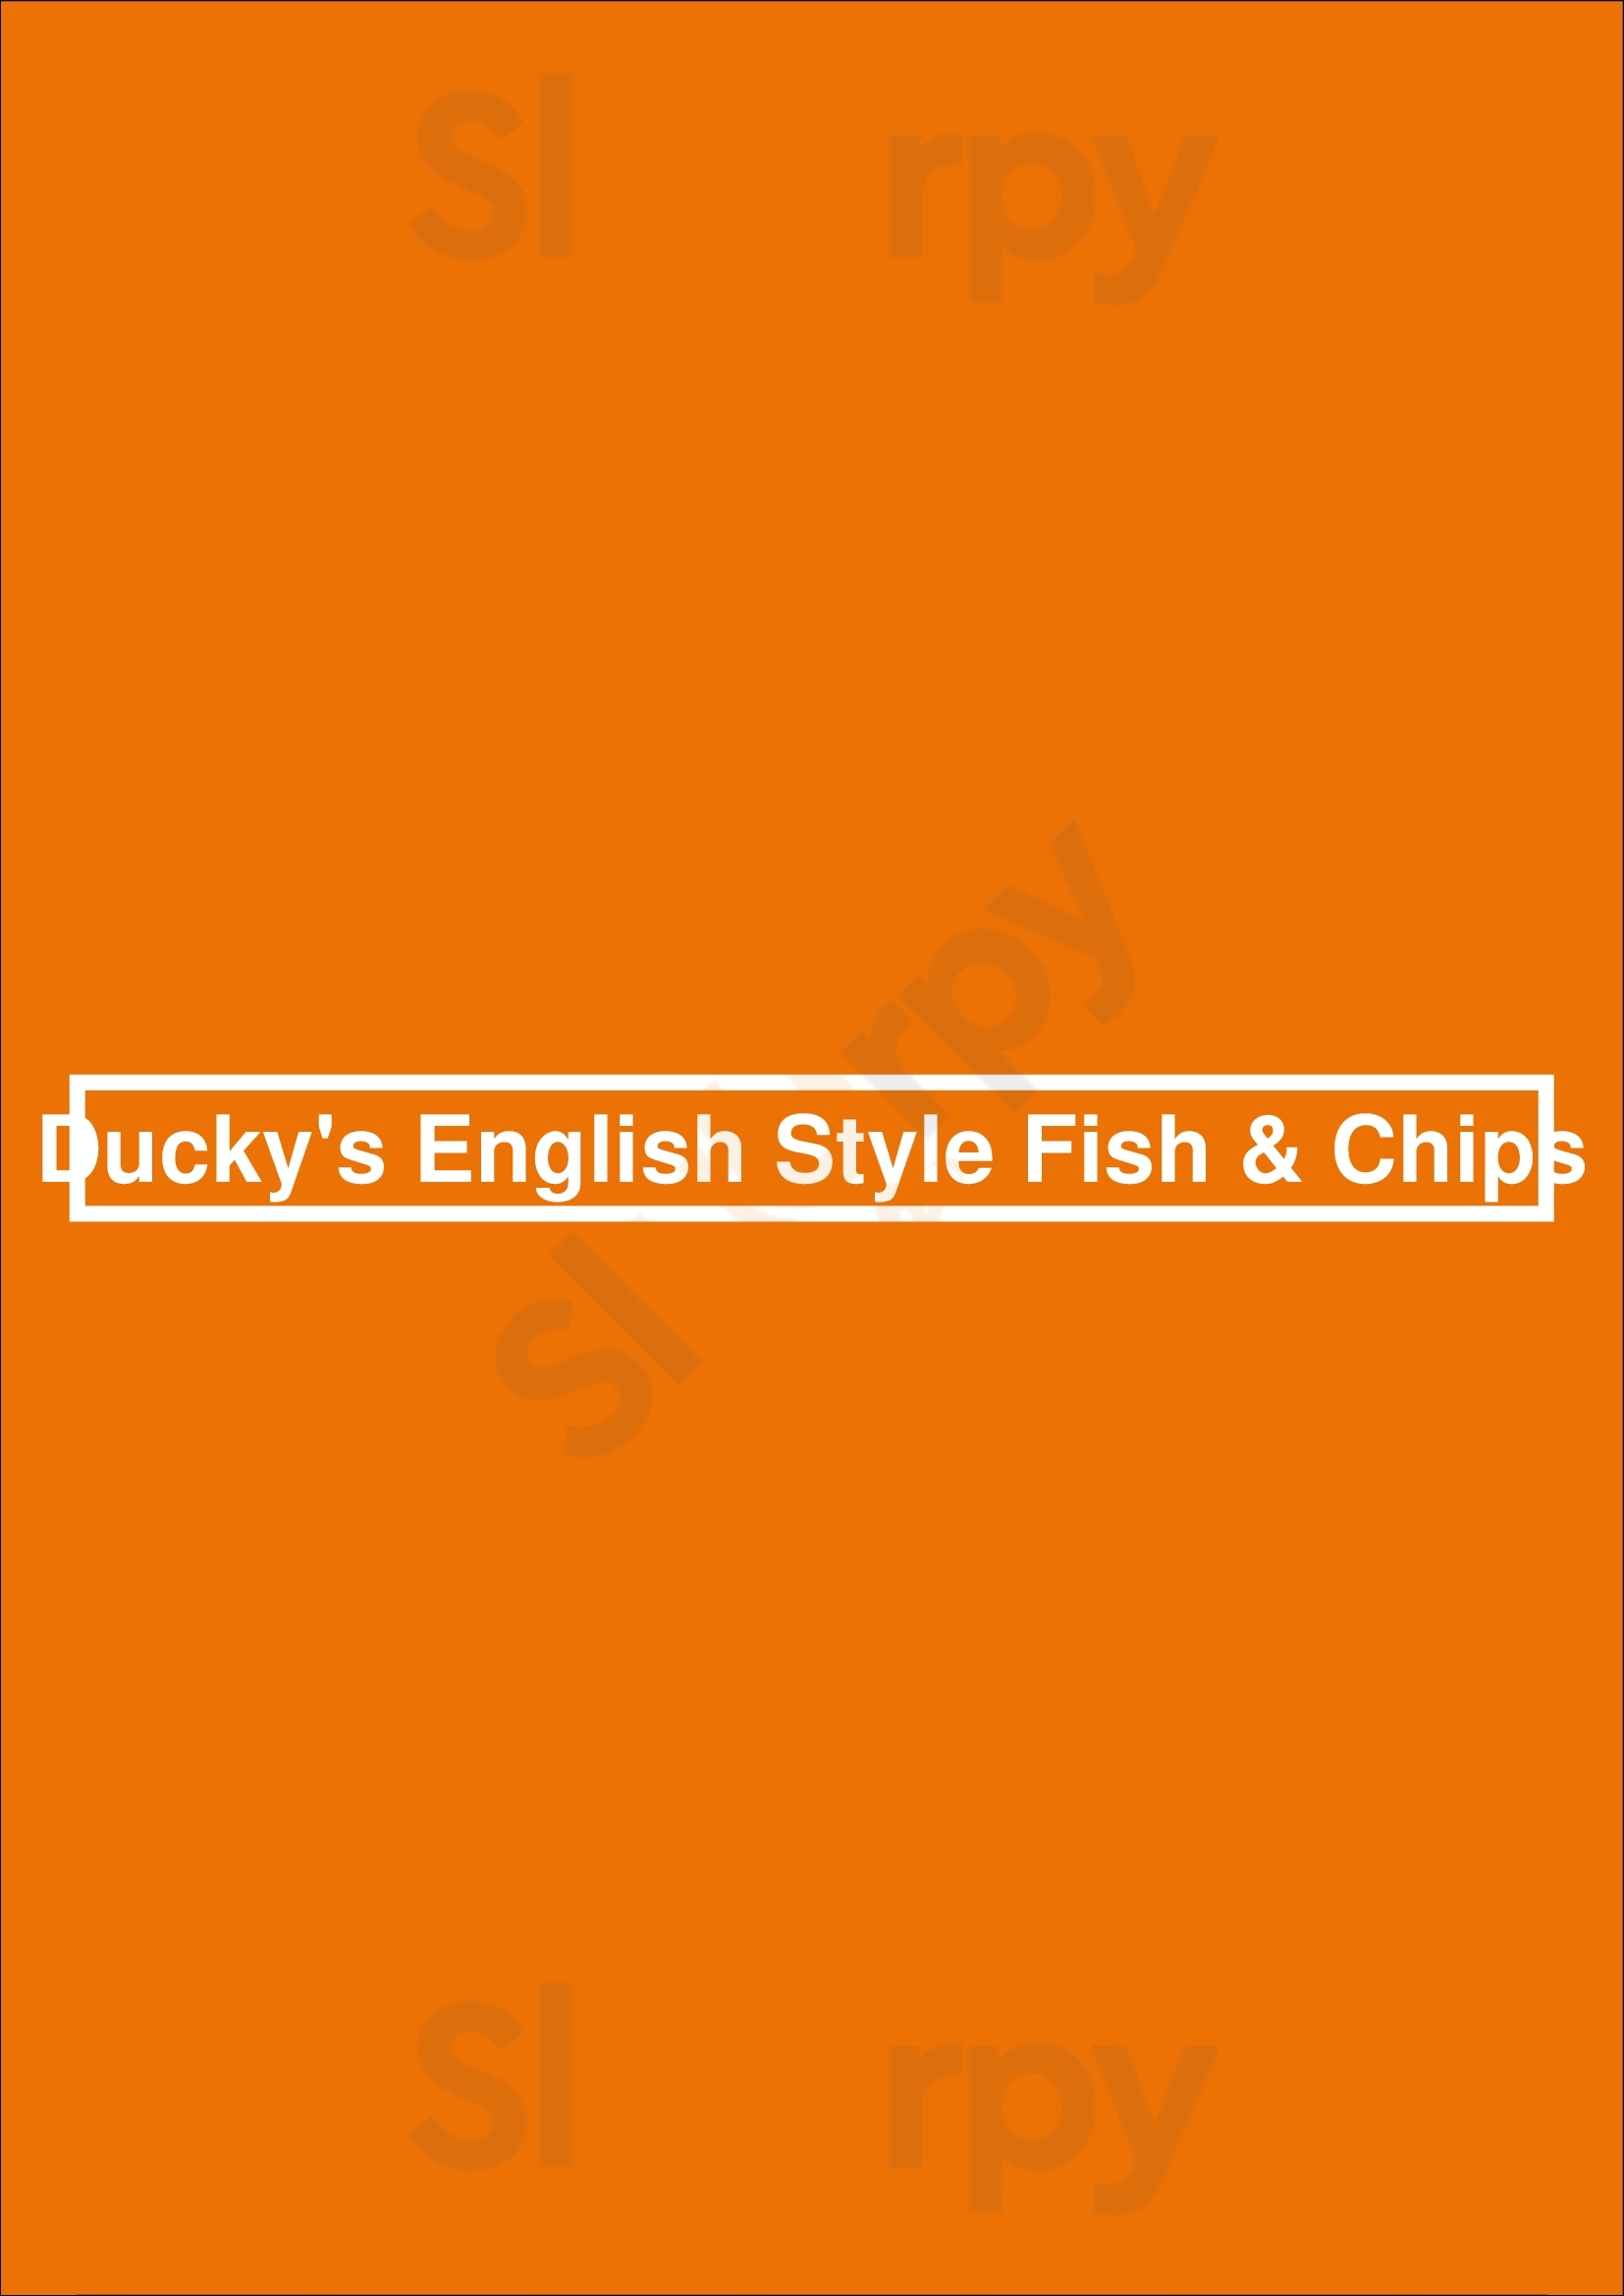 Ducky's English Style Fish & Chips Winnipeg Menu - 1